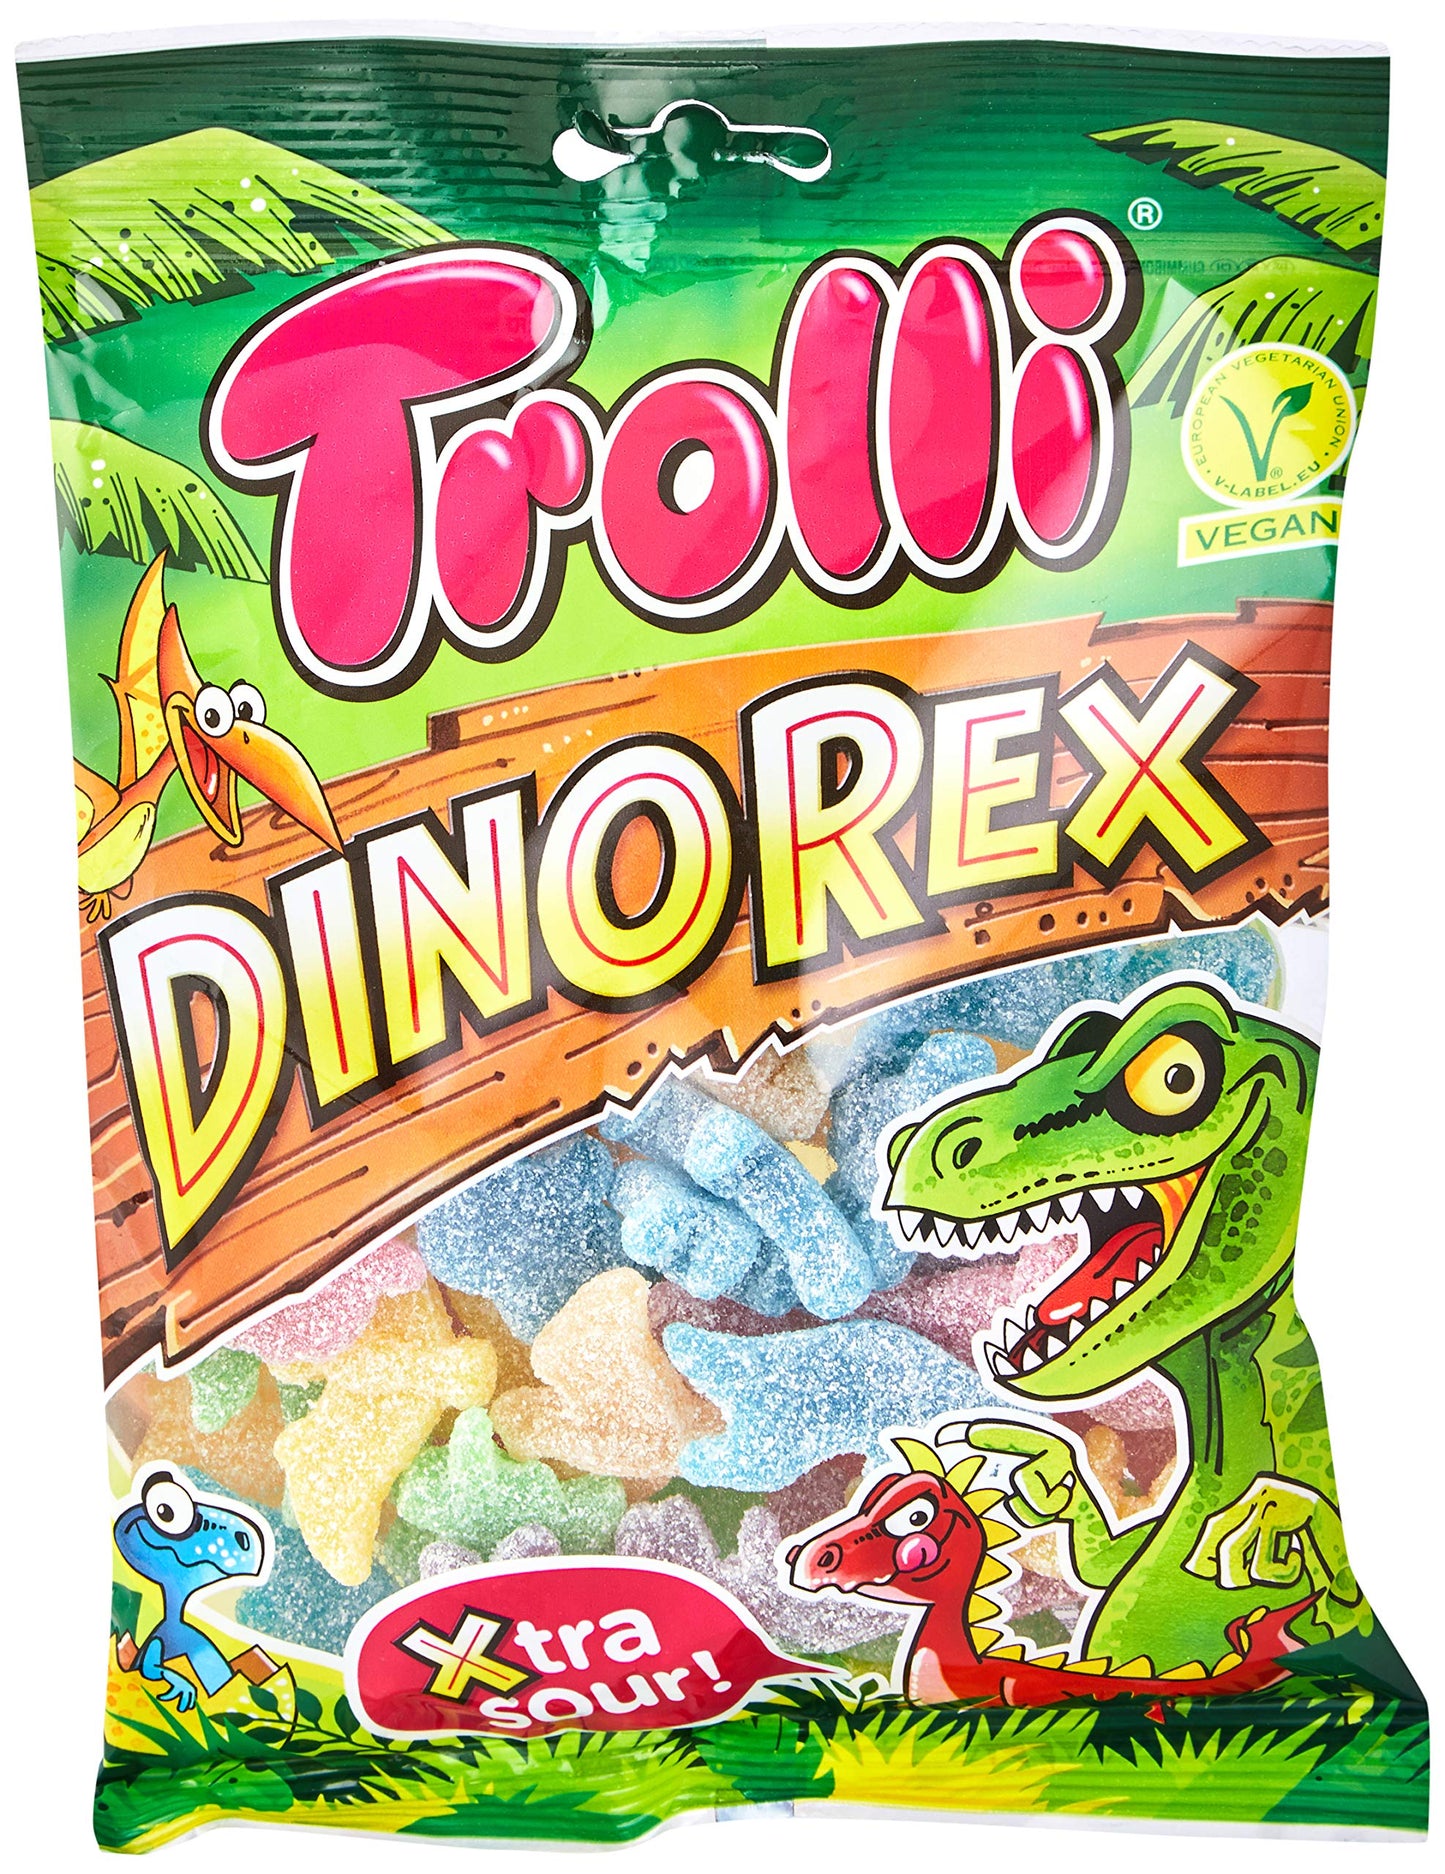 Trolli Vegan Dino Rex